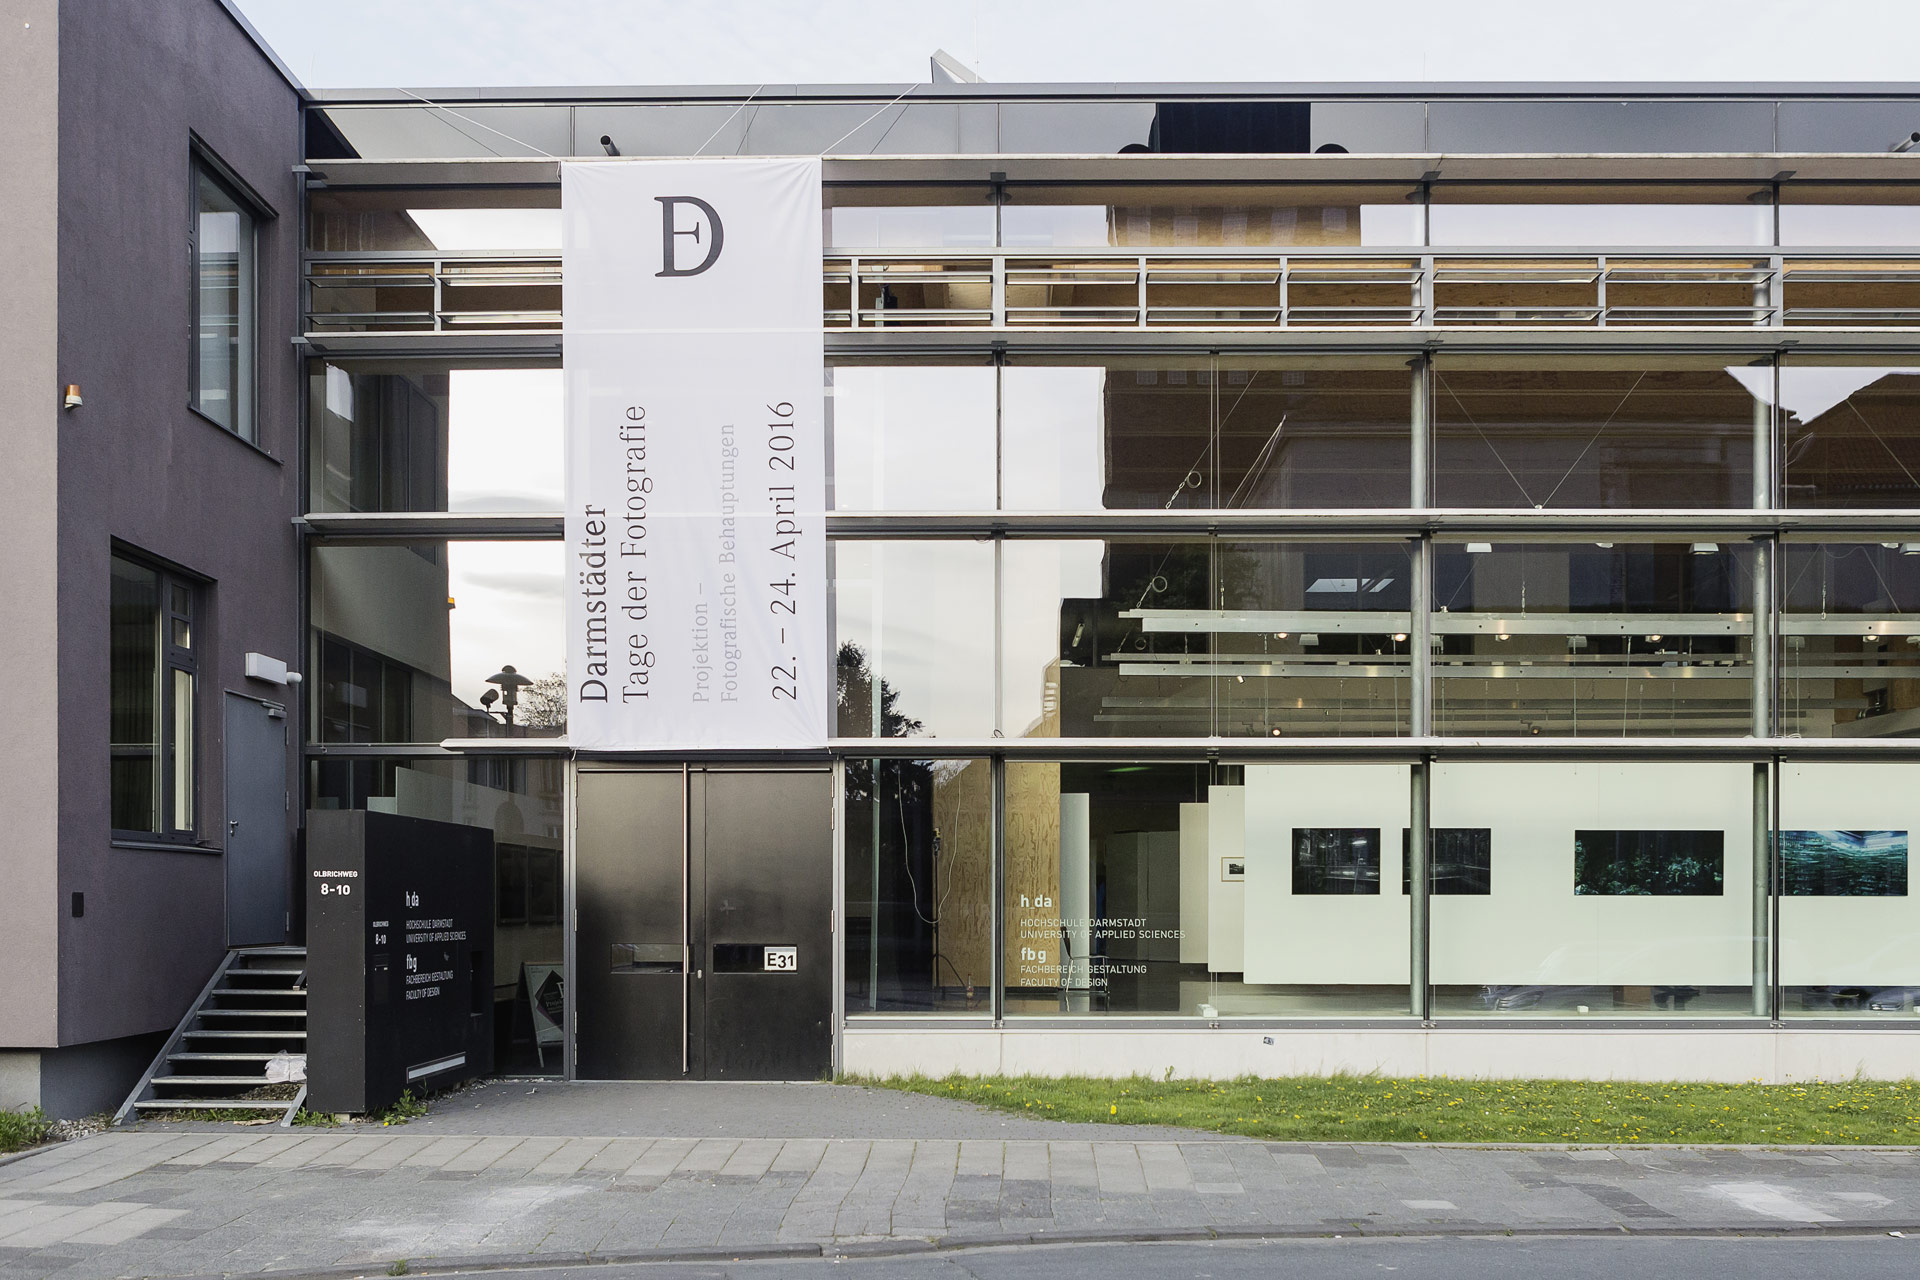 Foto: Eingang der Hochschule Darmstadt, Fachbereich Gestaltung